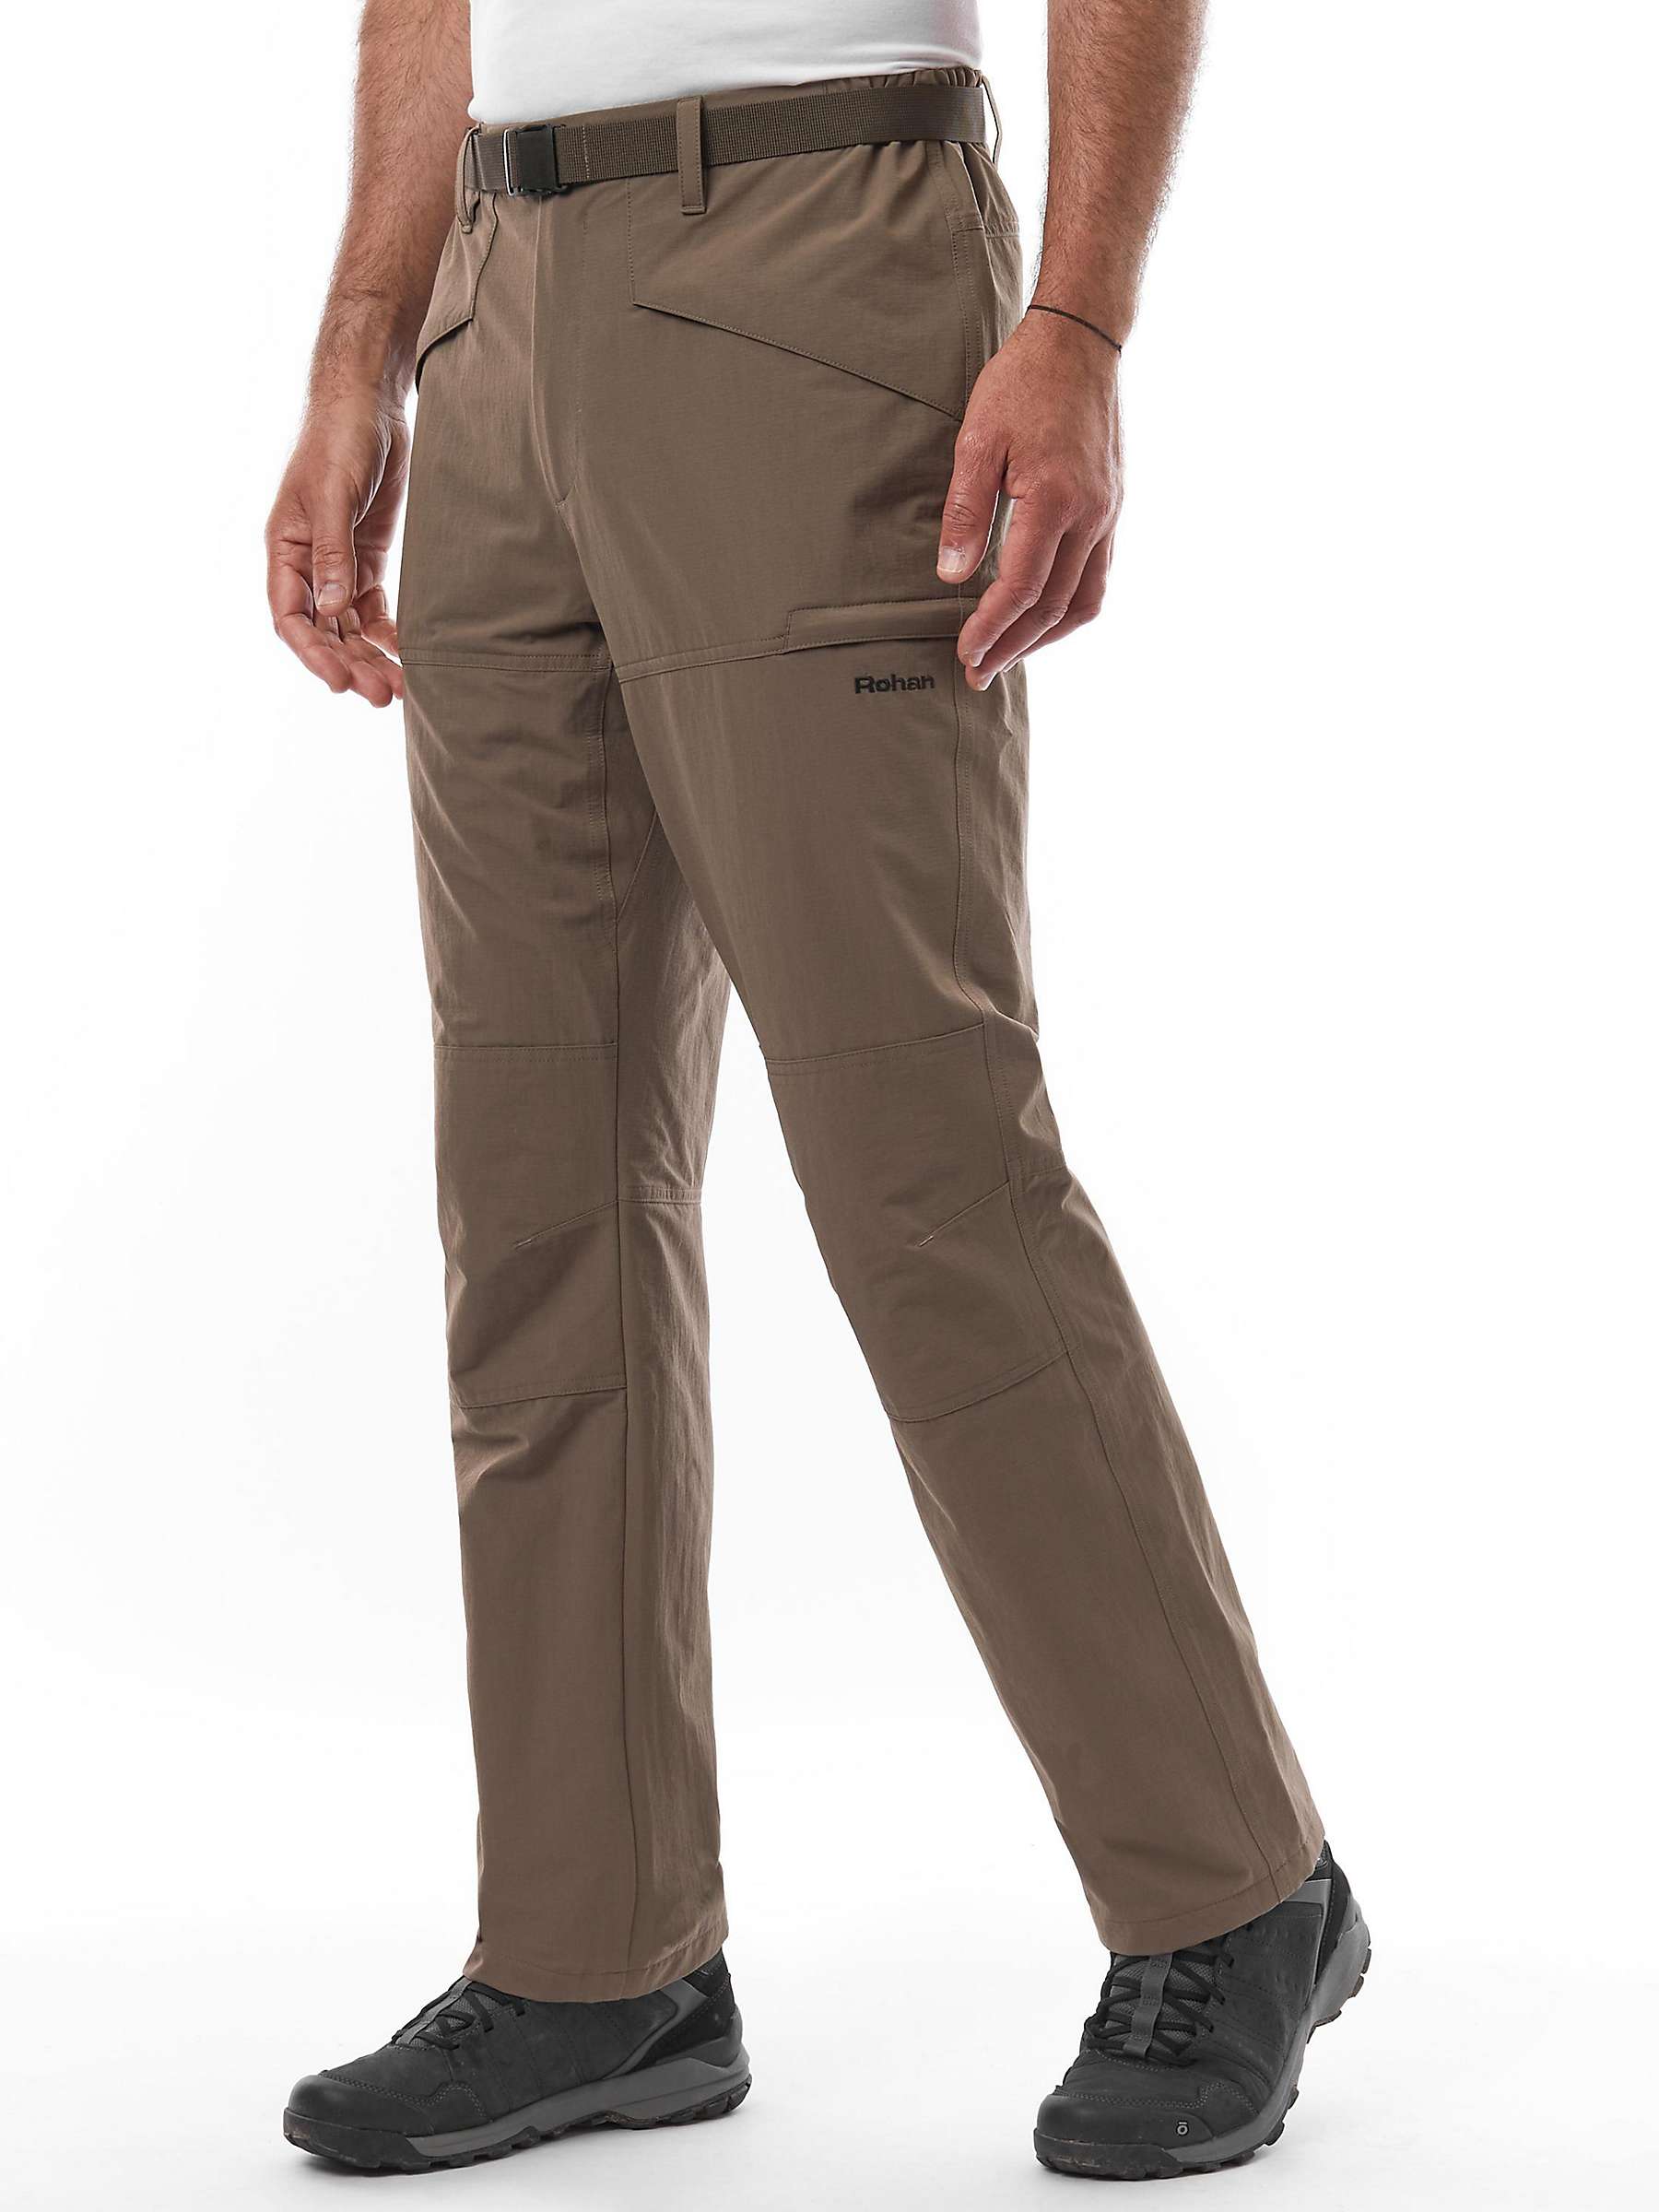 Buy Rohan Dry Ranger Men's Waterproof Trousers, Moorland Brown Online at johnlewis.com